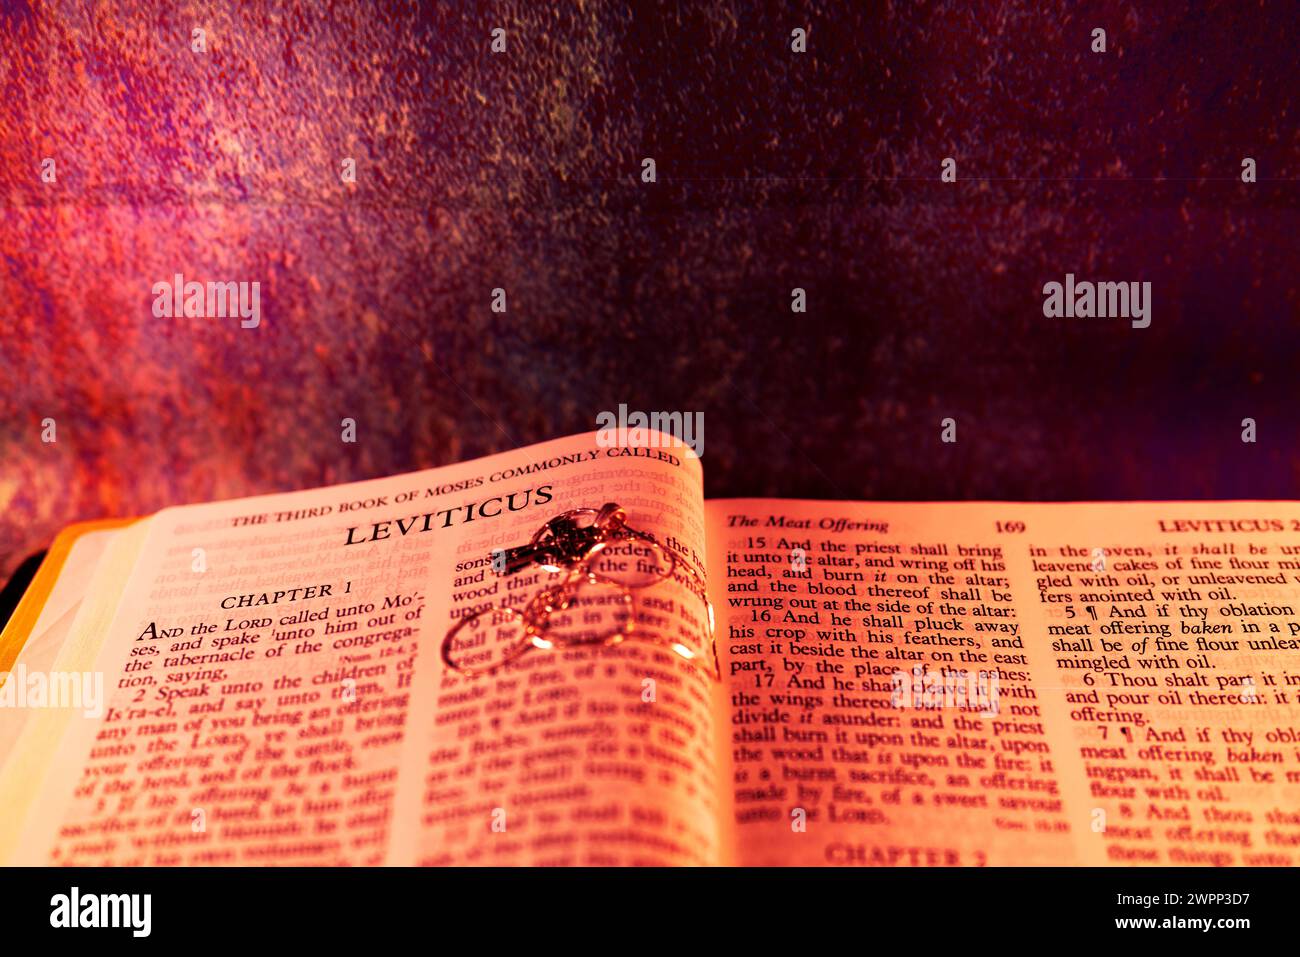 Lens Flare Effect mit Open Holybile Book das dritte Buch von MOSES, das gemeinhin Leviticus genannt wird, um Hintergrund und Inspiration zu erhalten Stockfoto